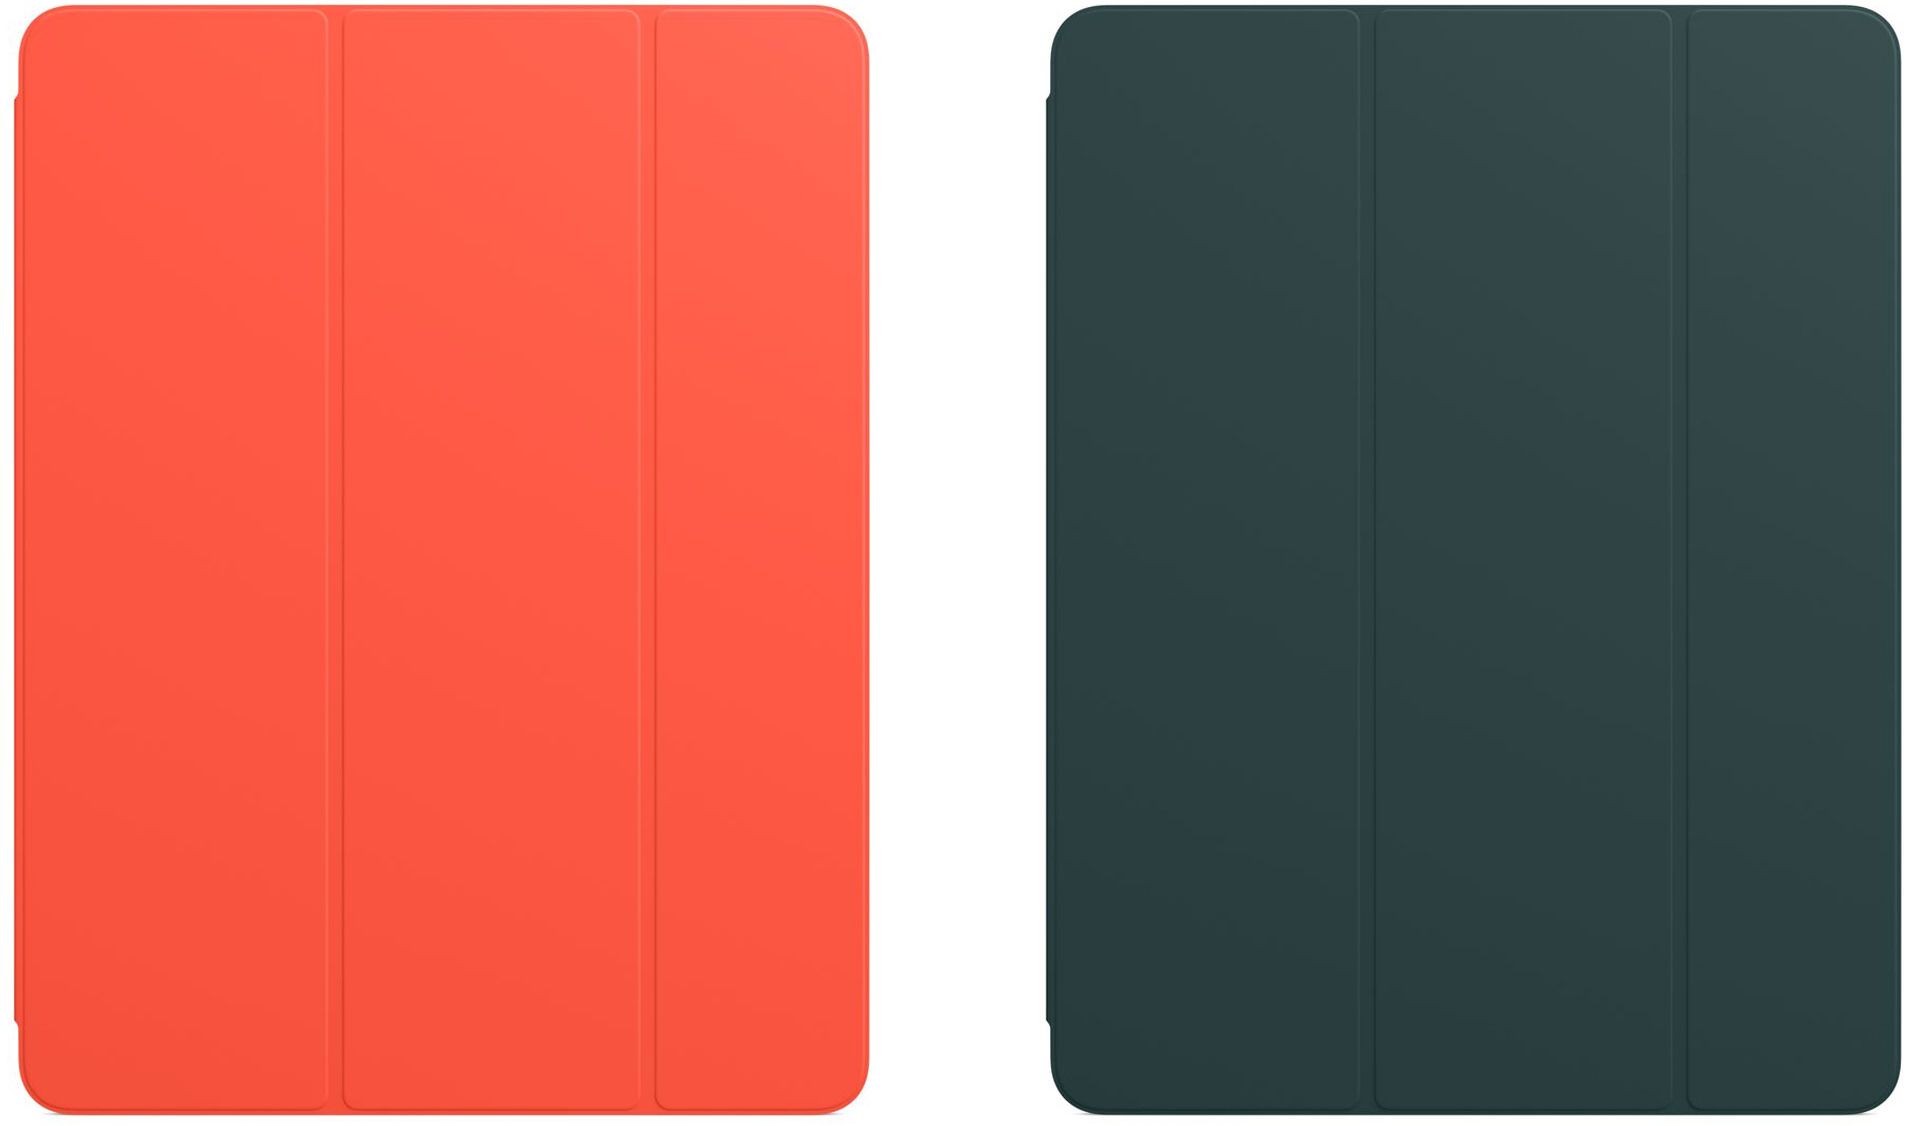 مرجع متخصصين ايران رنگ نارنجي و سبز اسمارت فوليو و اسمارت كاور اپل